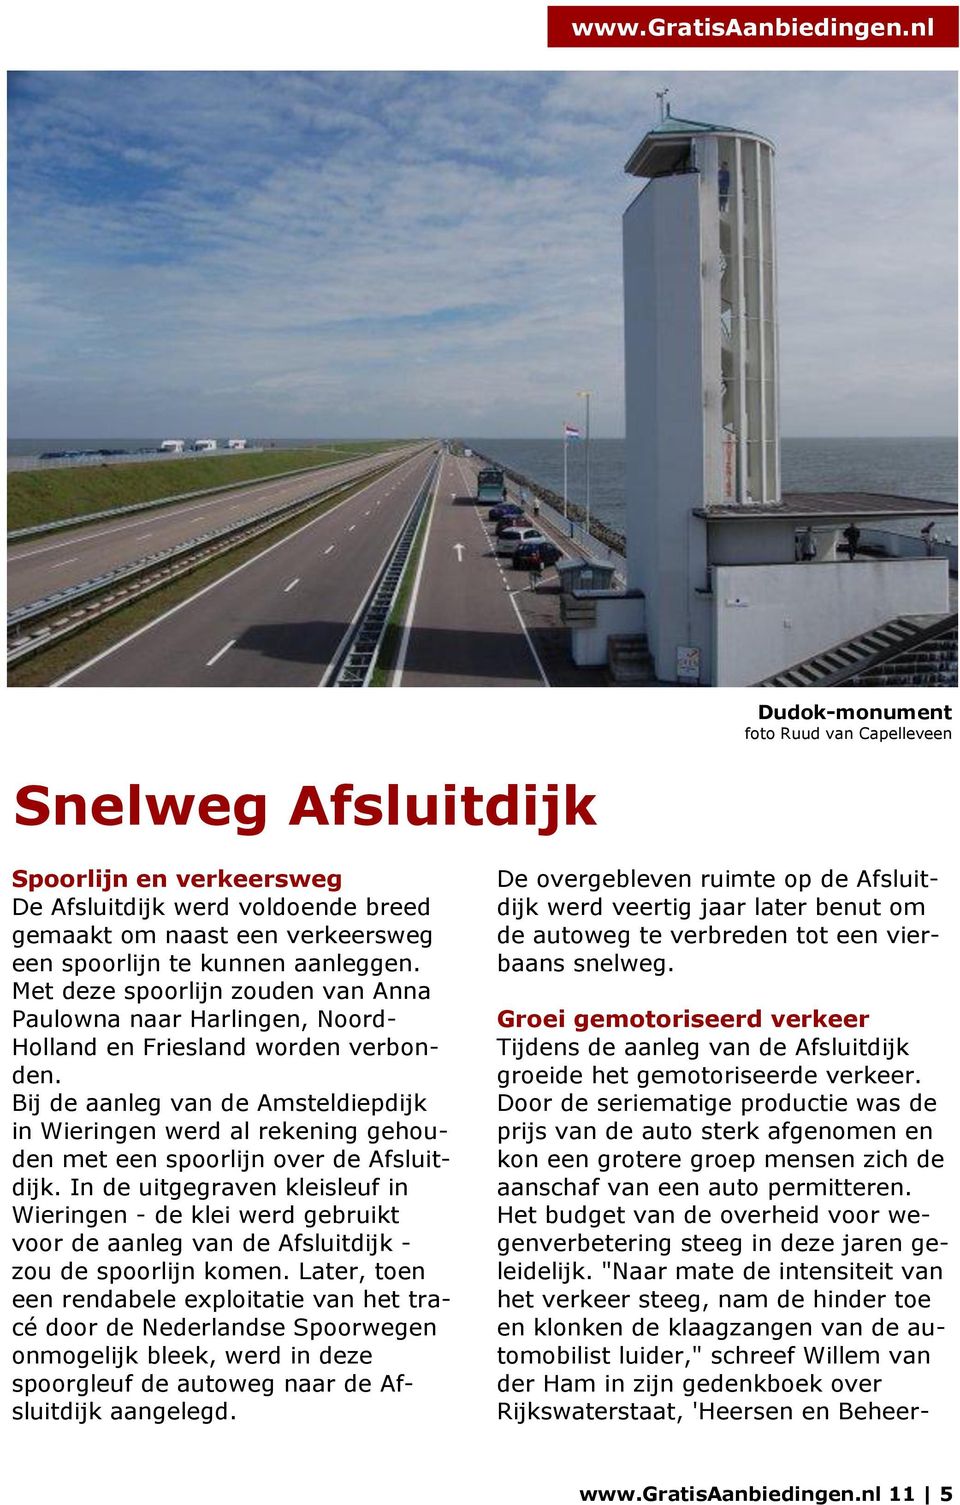 Bij de aanleg van de Amsteldiepdijk in Wieringen werd al rekening gehouden met een spoorlijn over de Afsluitdijk.